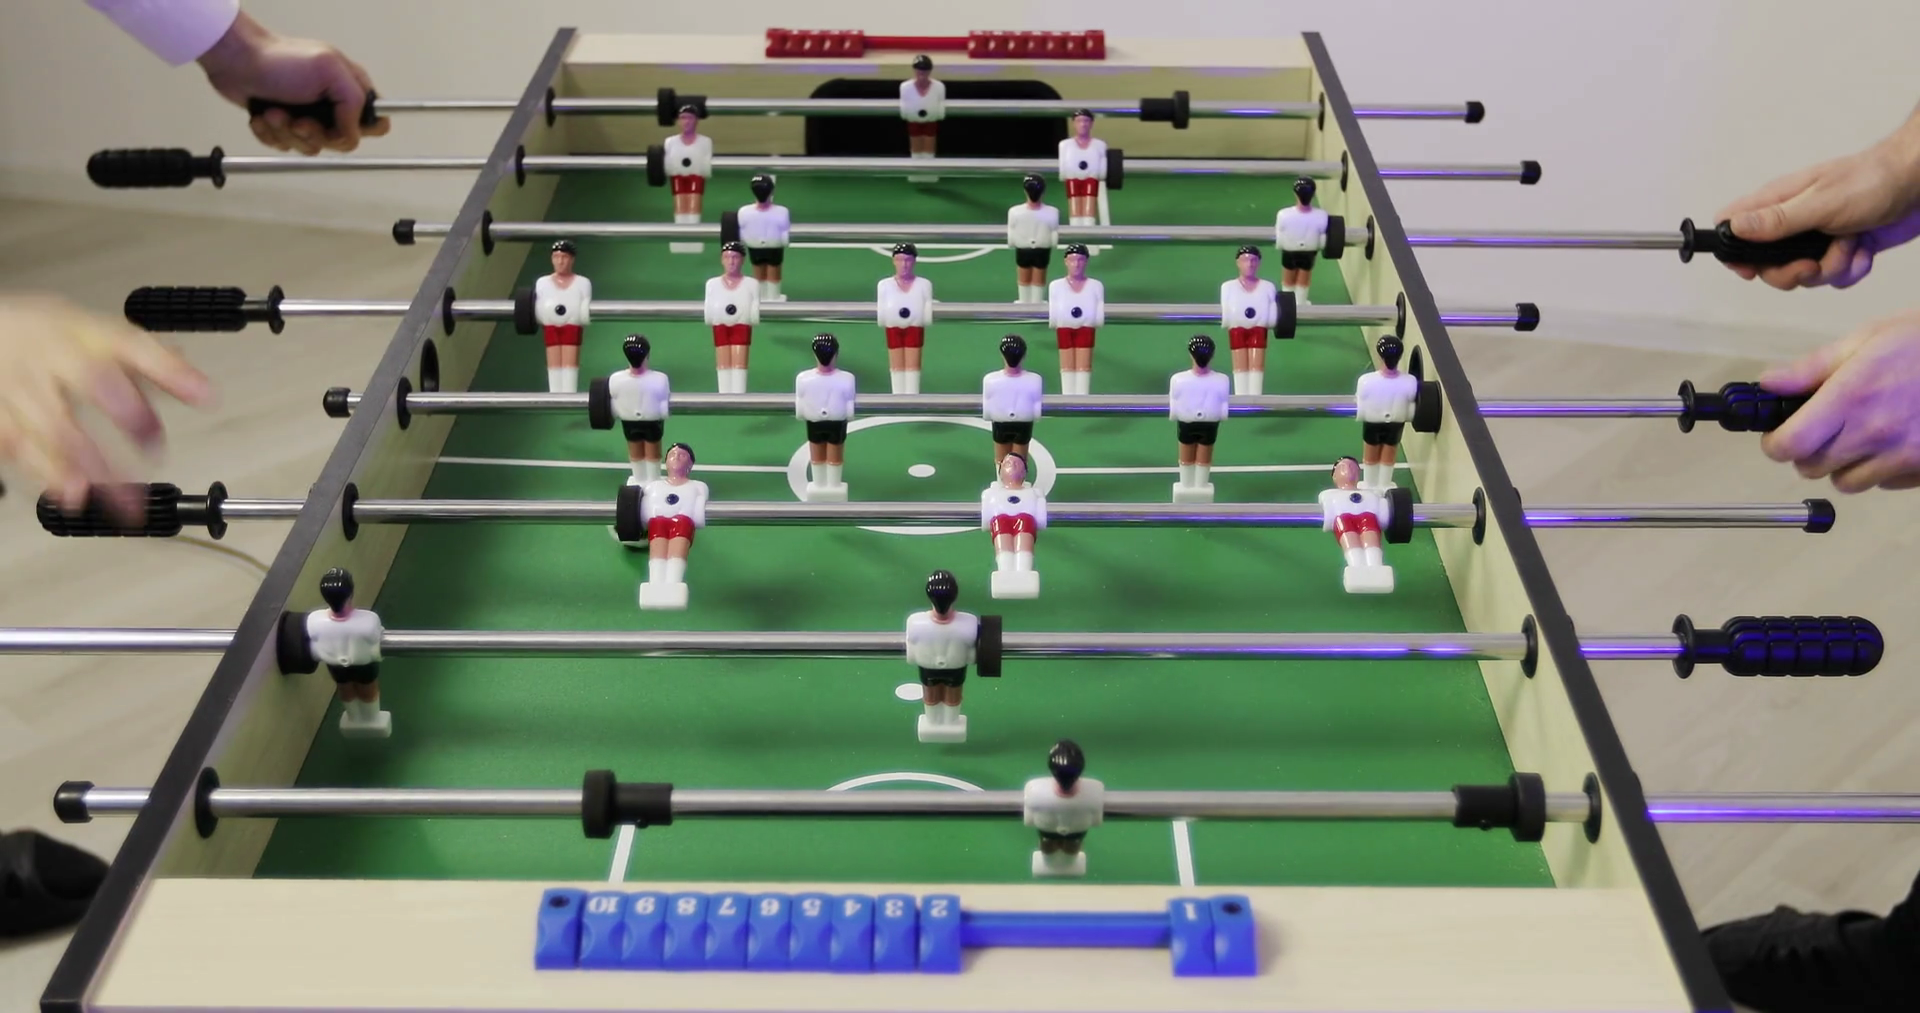 Turnir u stolnom fudbalu: Mini fudbal (turnir za dječake s malim golovima)